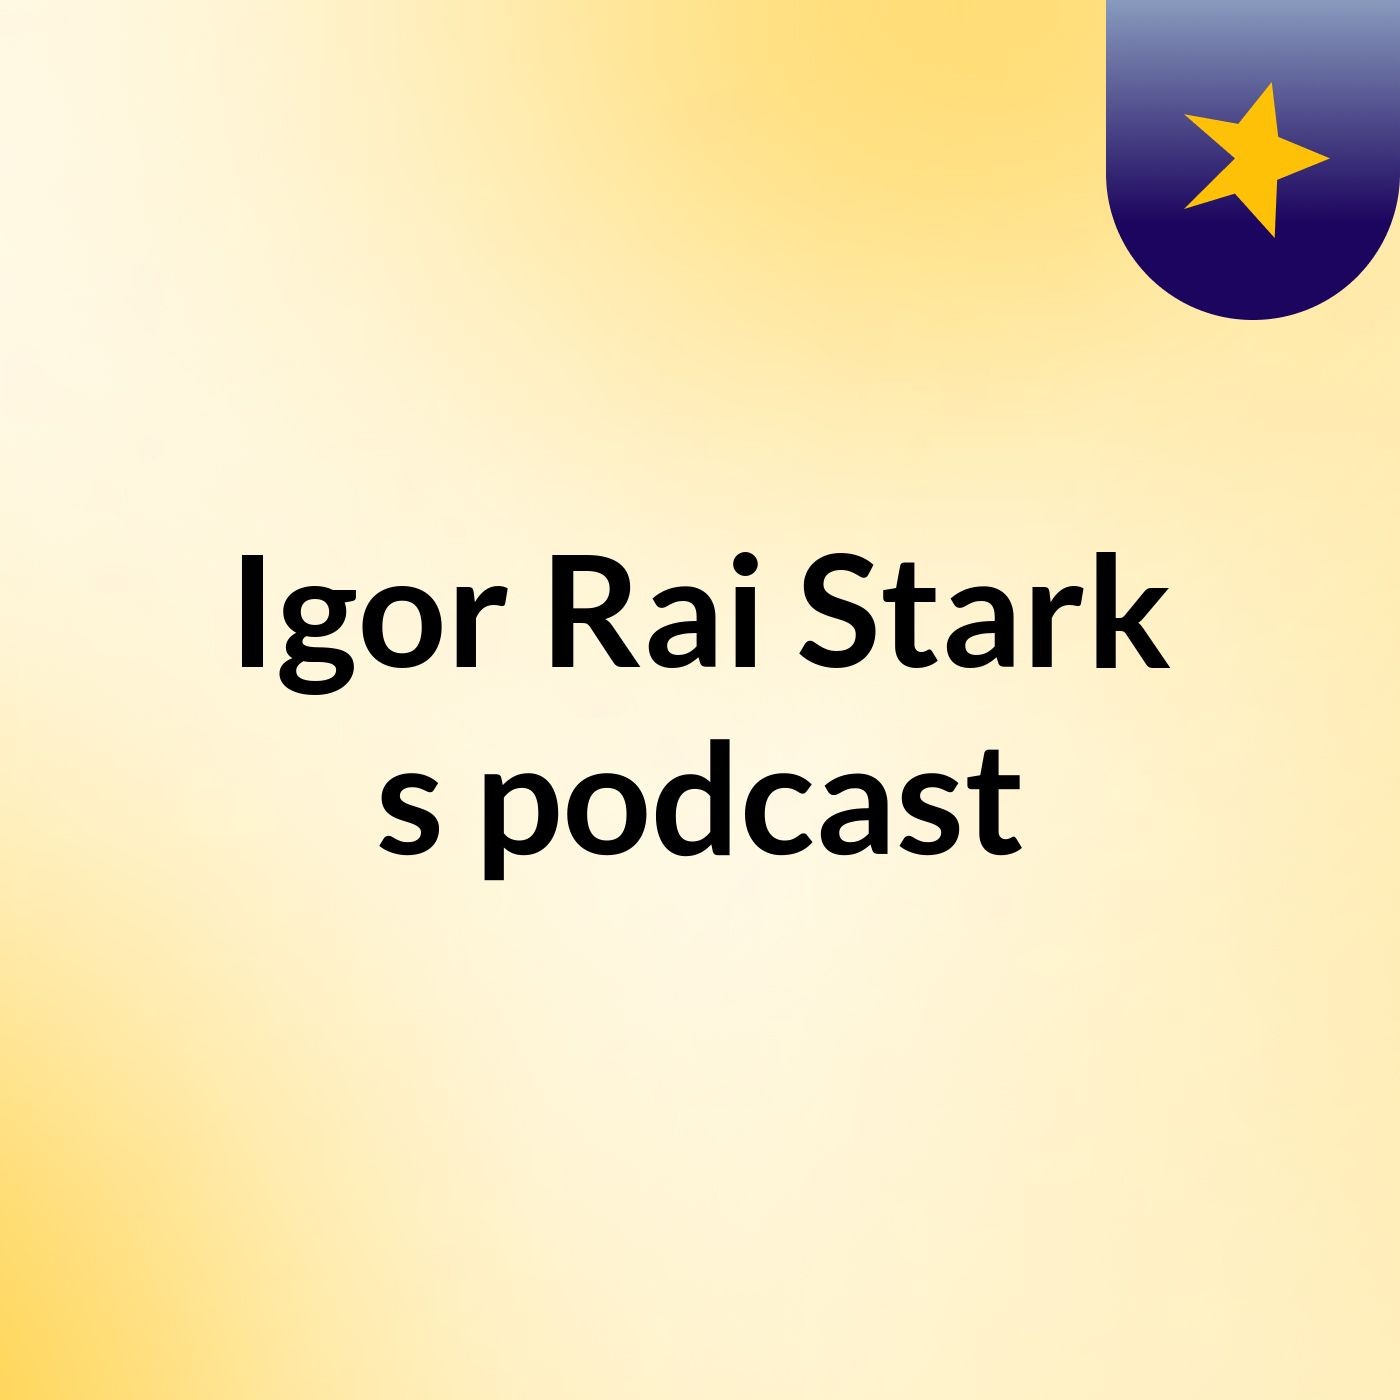 Igor Rai Stark's podcast